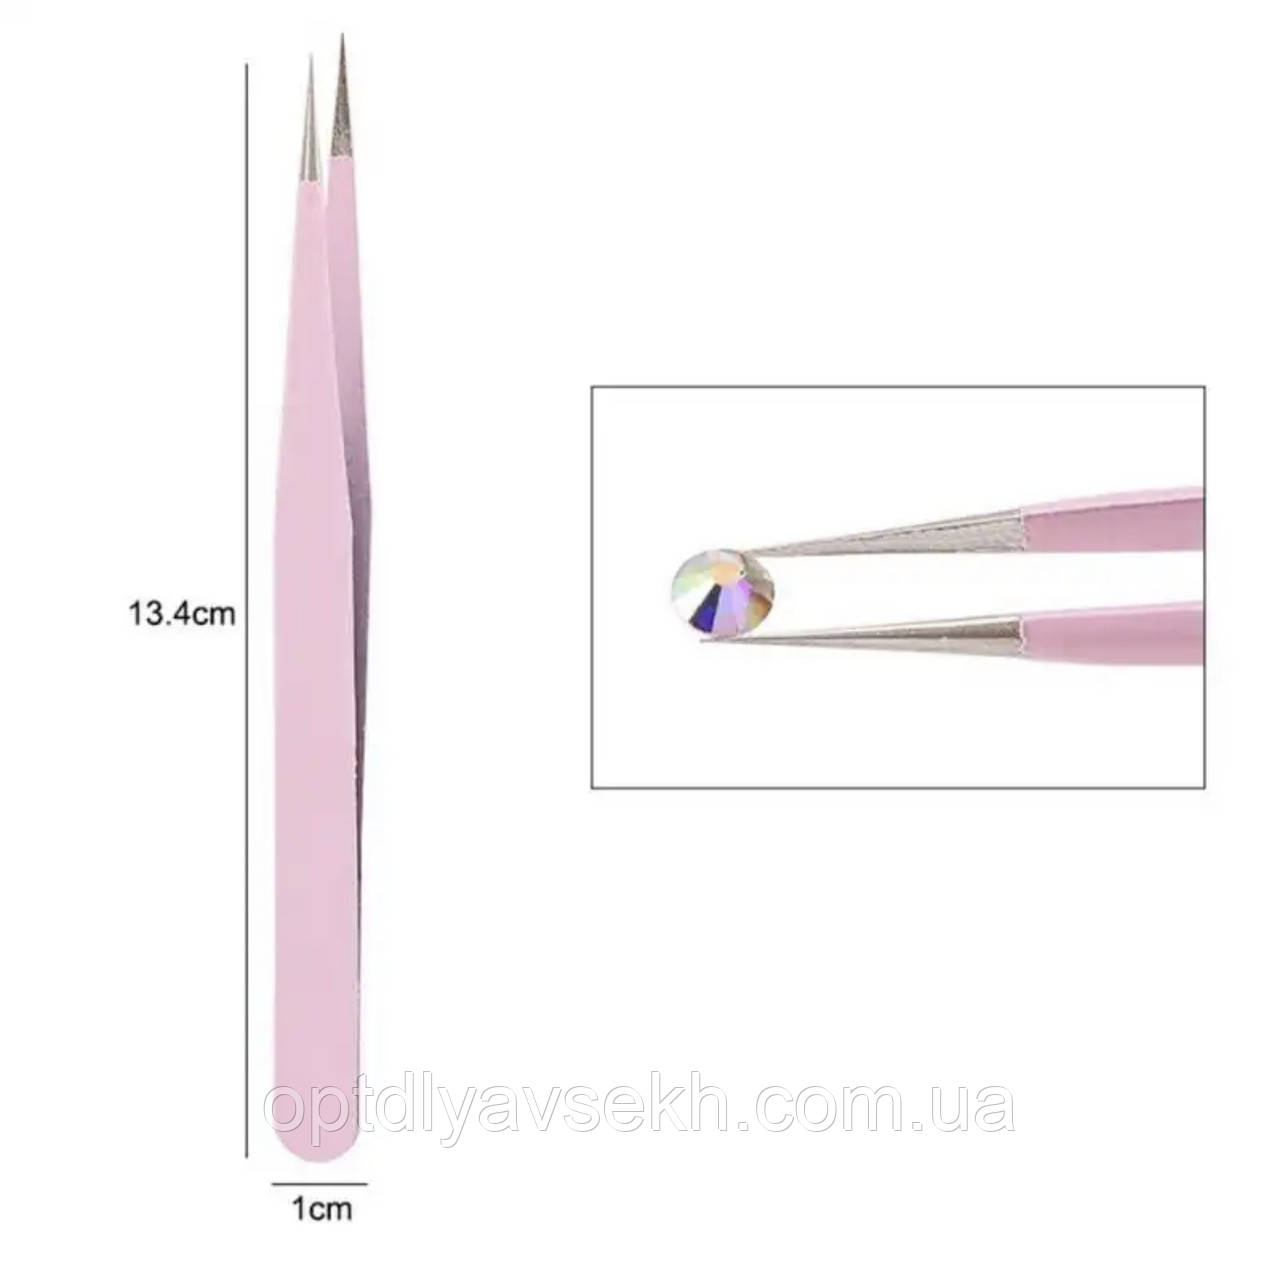 Пінцет прямий гострий для манікюру (15 мм) для захоплення страз, стікерів, бусинок та інших дрібних деталей. Рожевий А-1